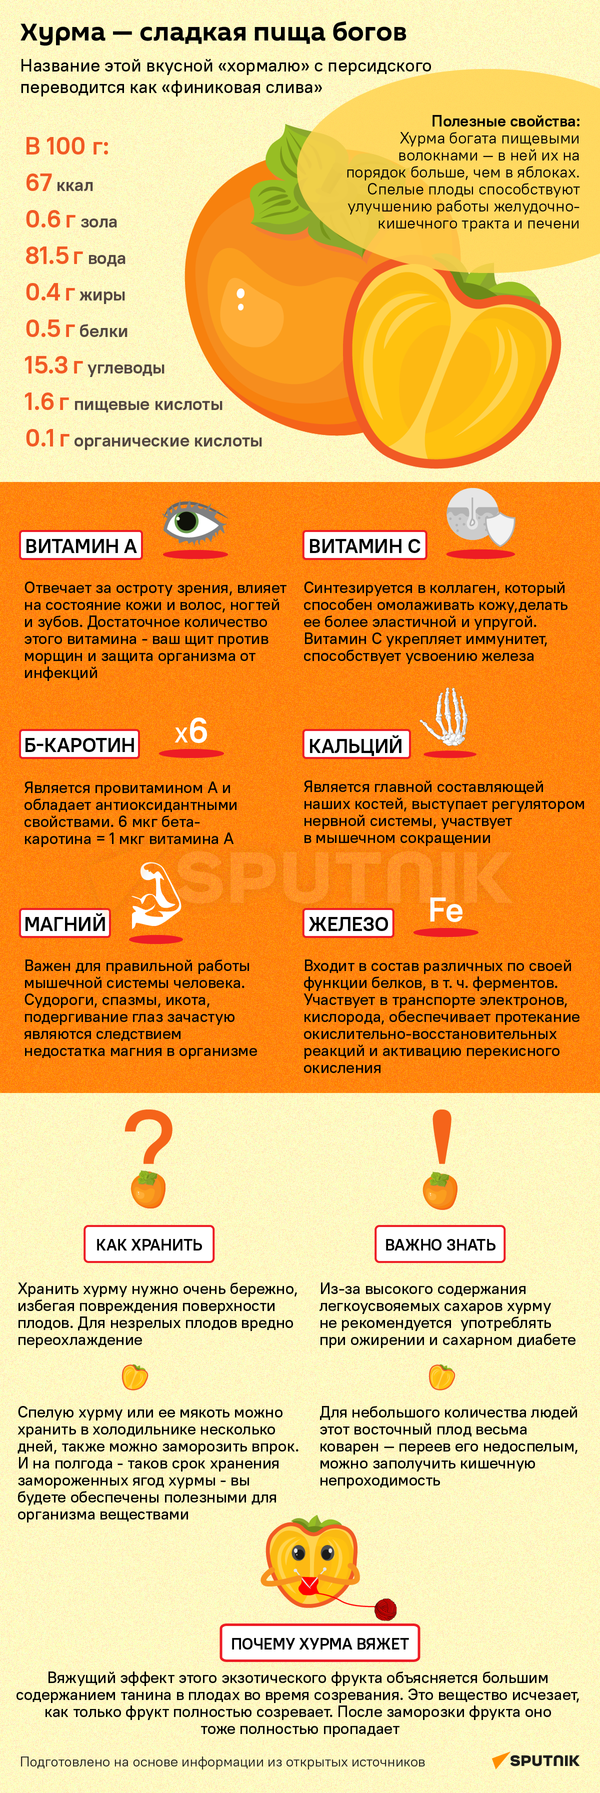 Много пользы, но есть и вред: что важно знать о хурме - Sputnik Беларусь